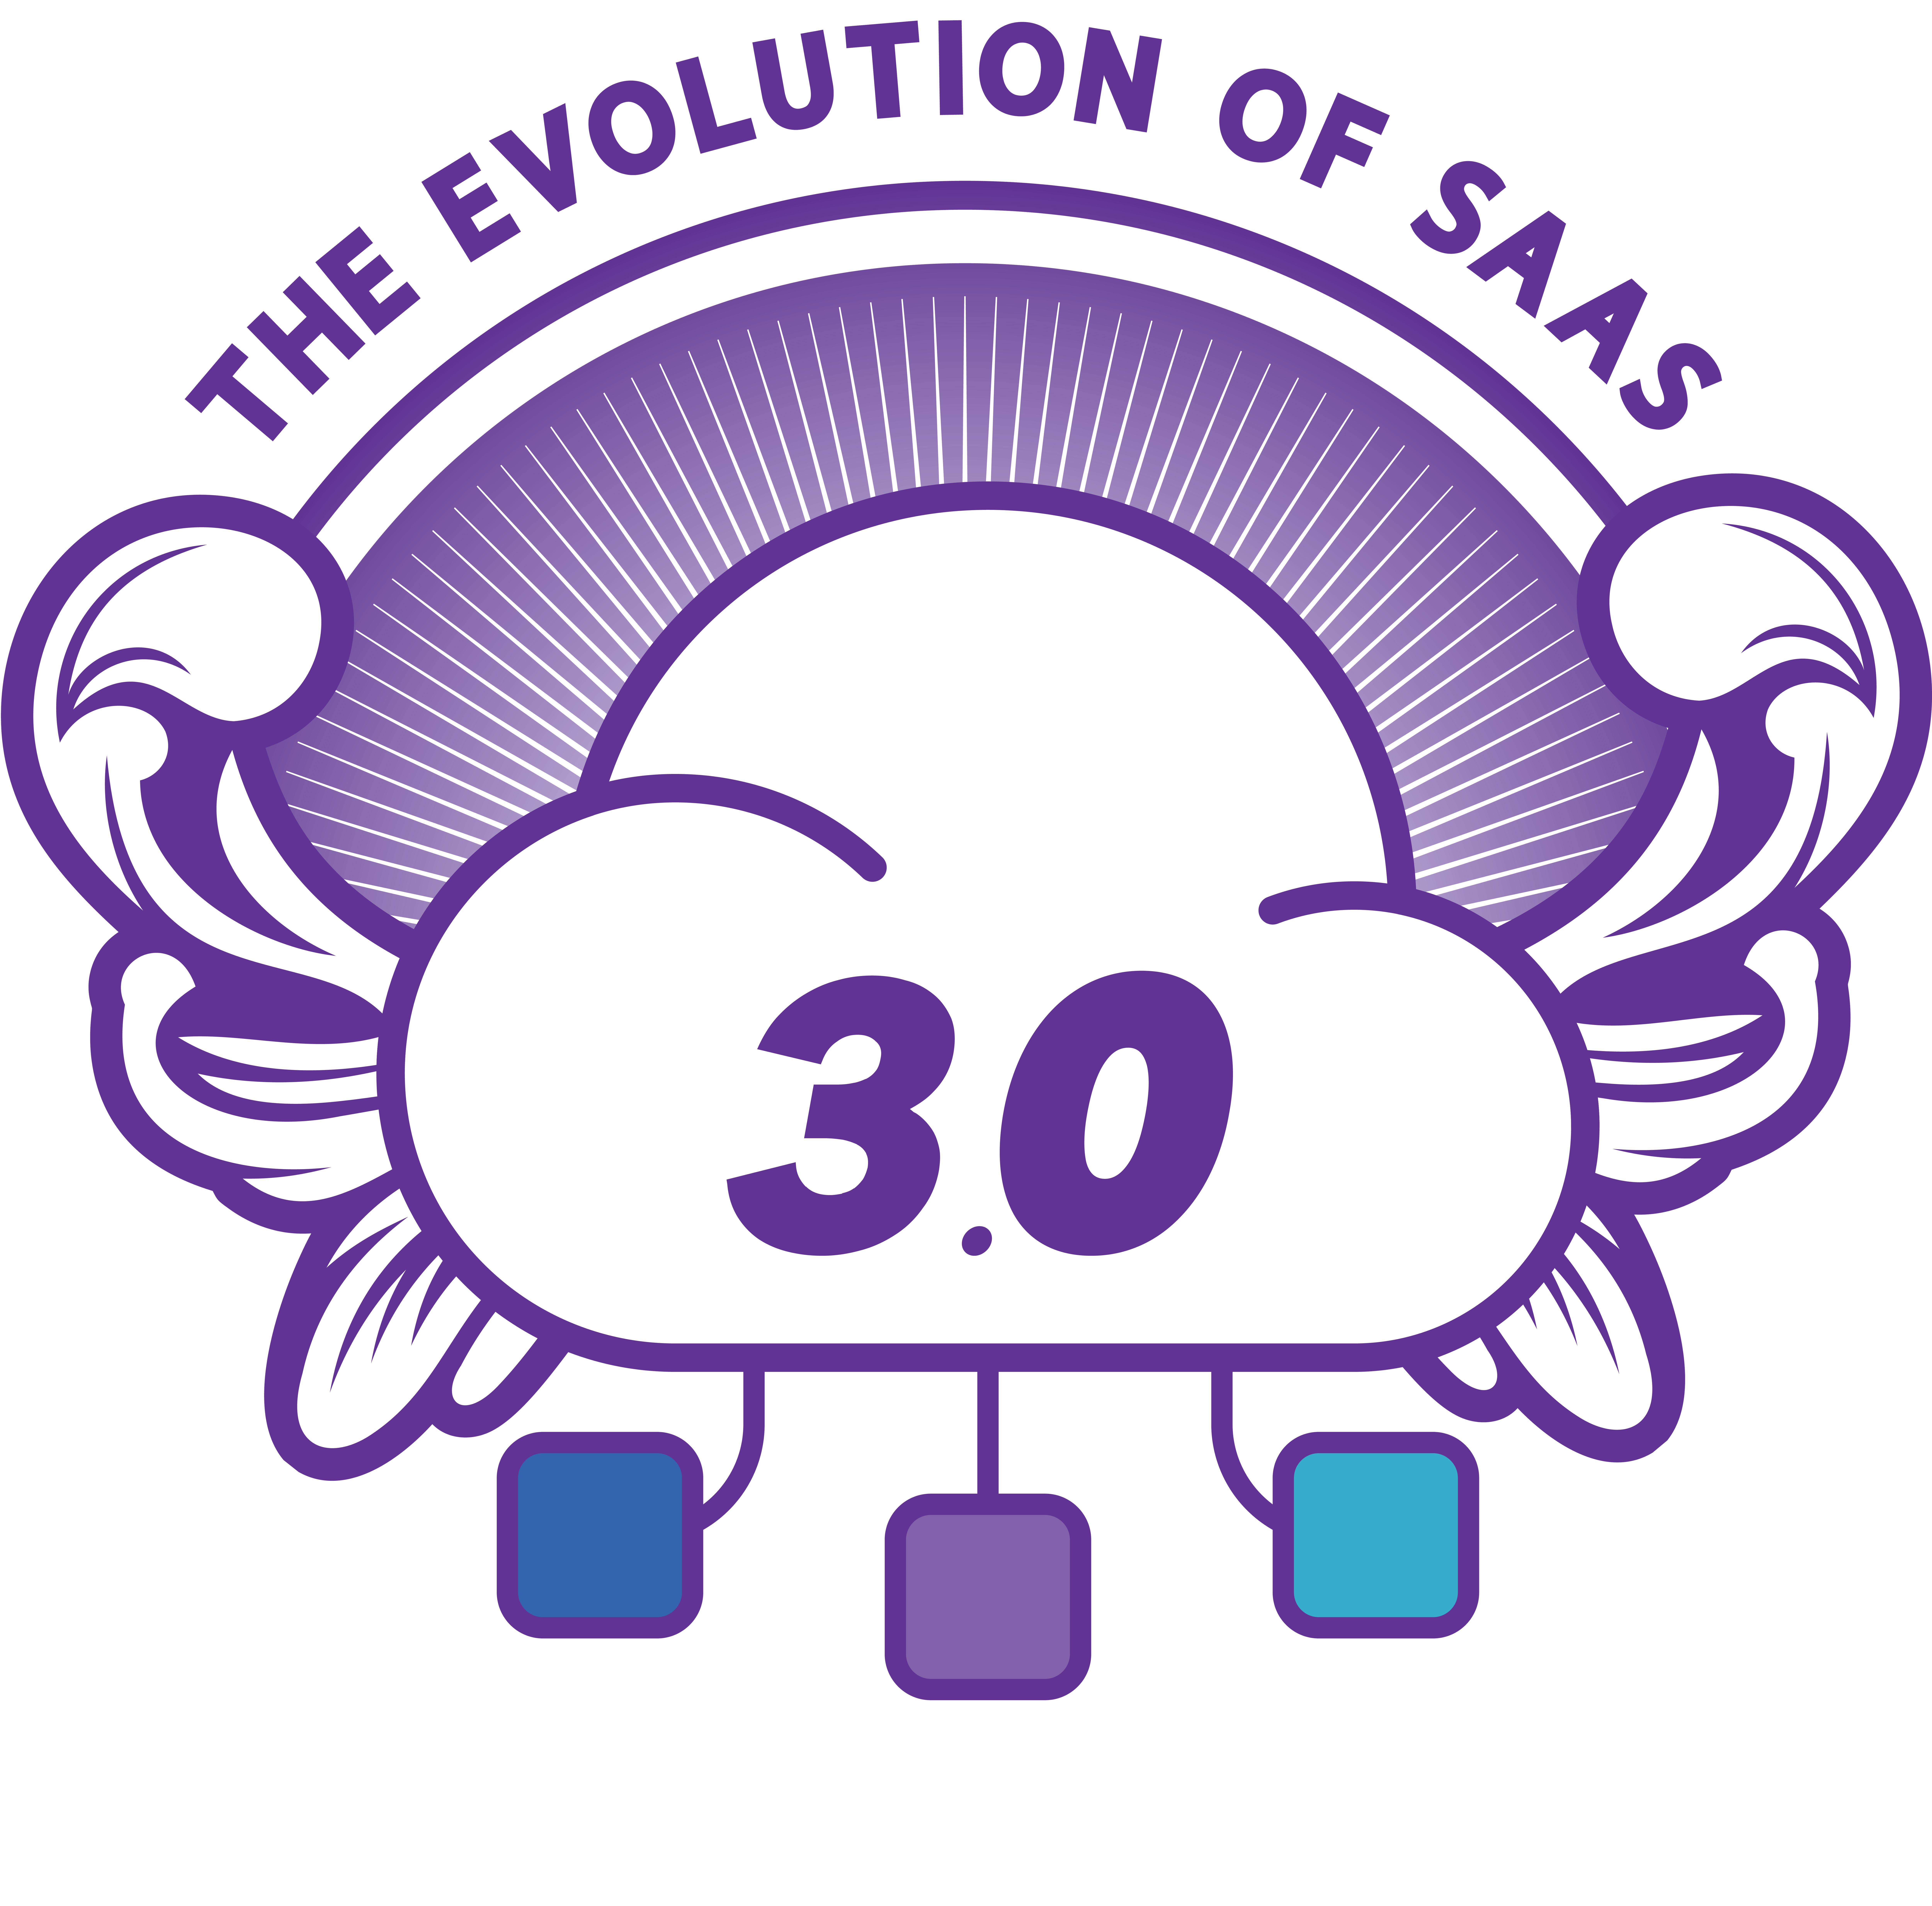 EOS - v3.0 Logo - Final v3Final-1